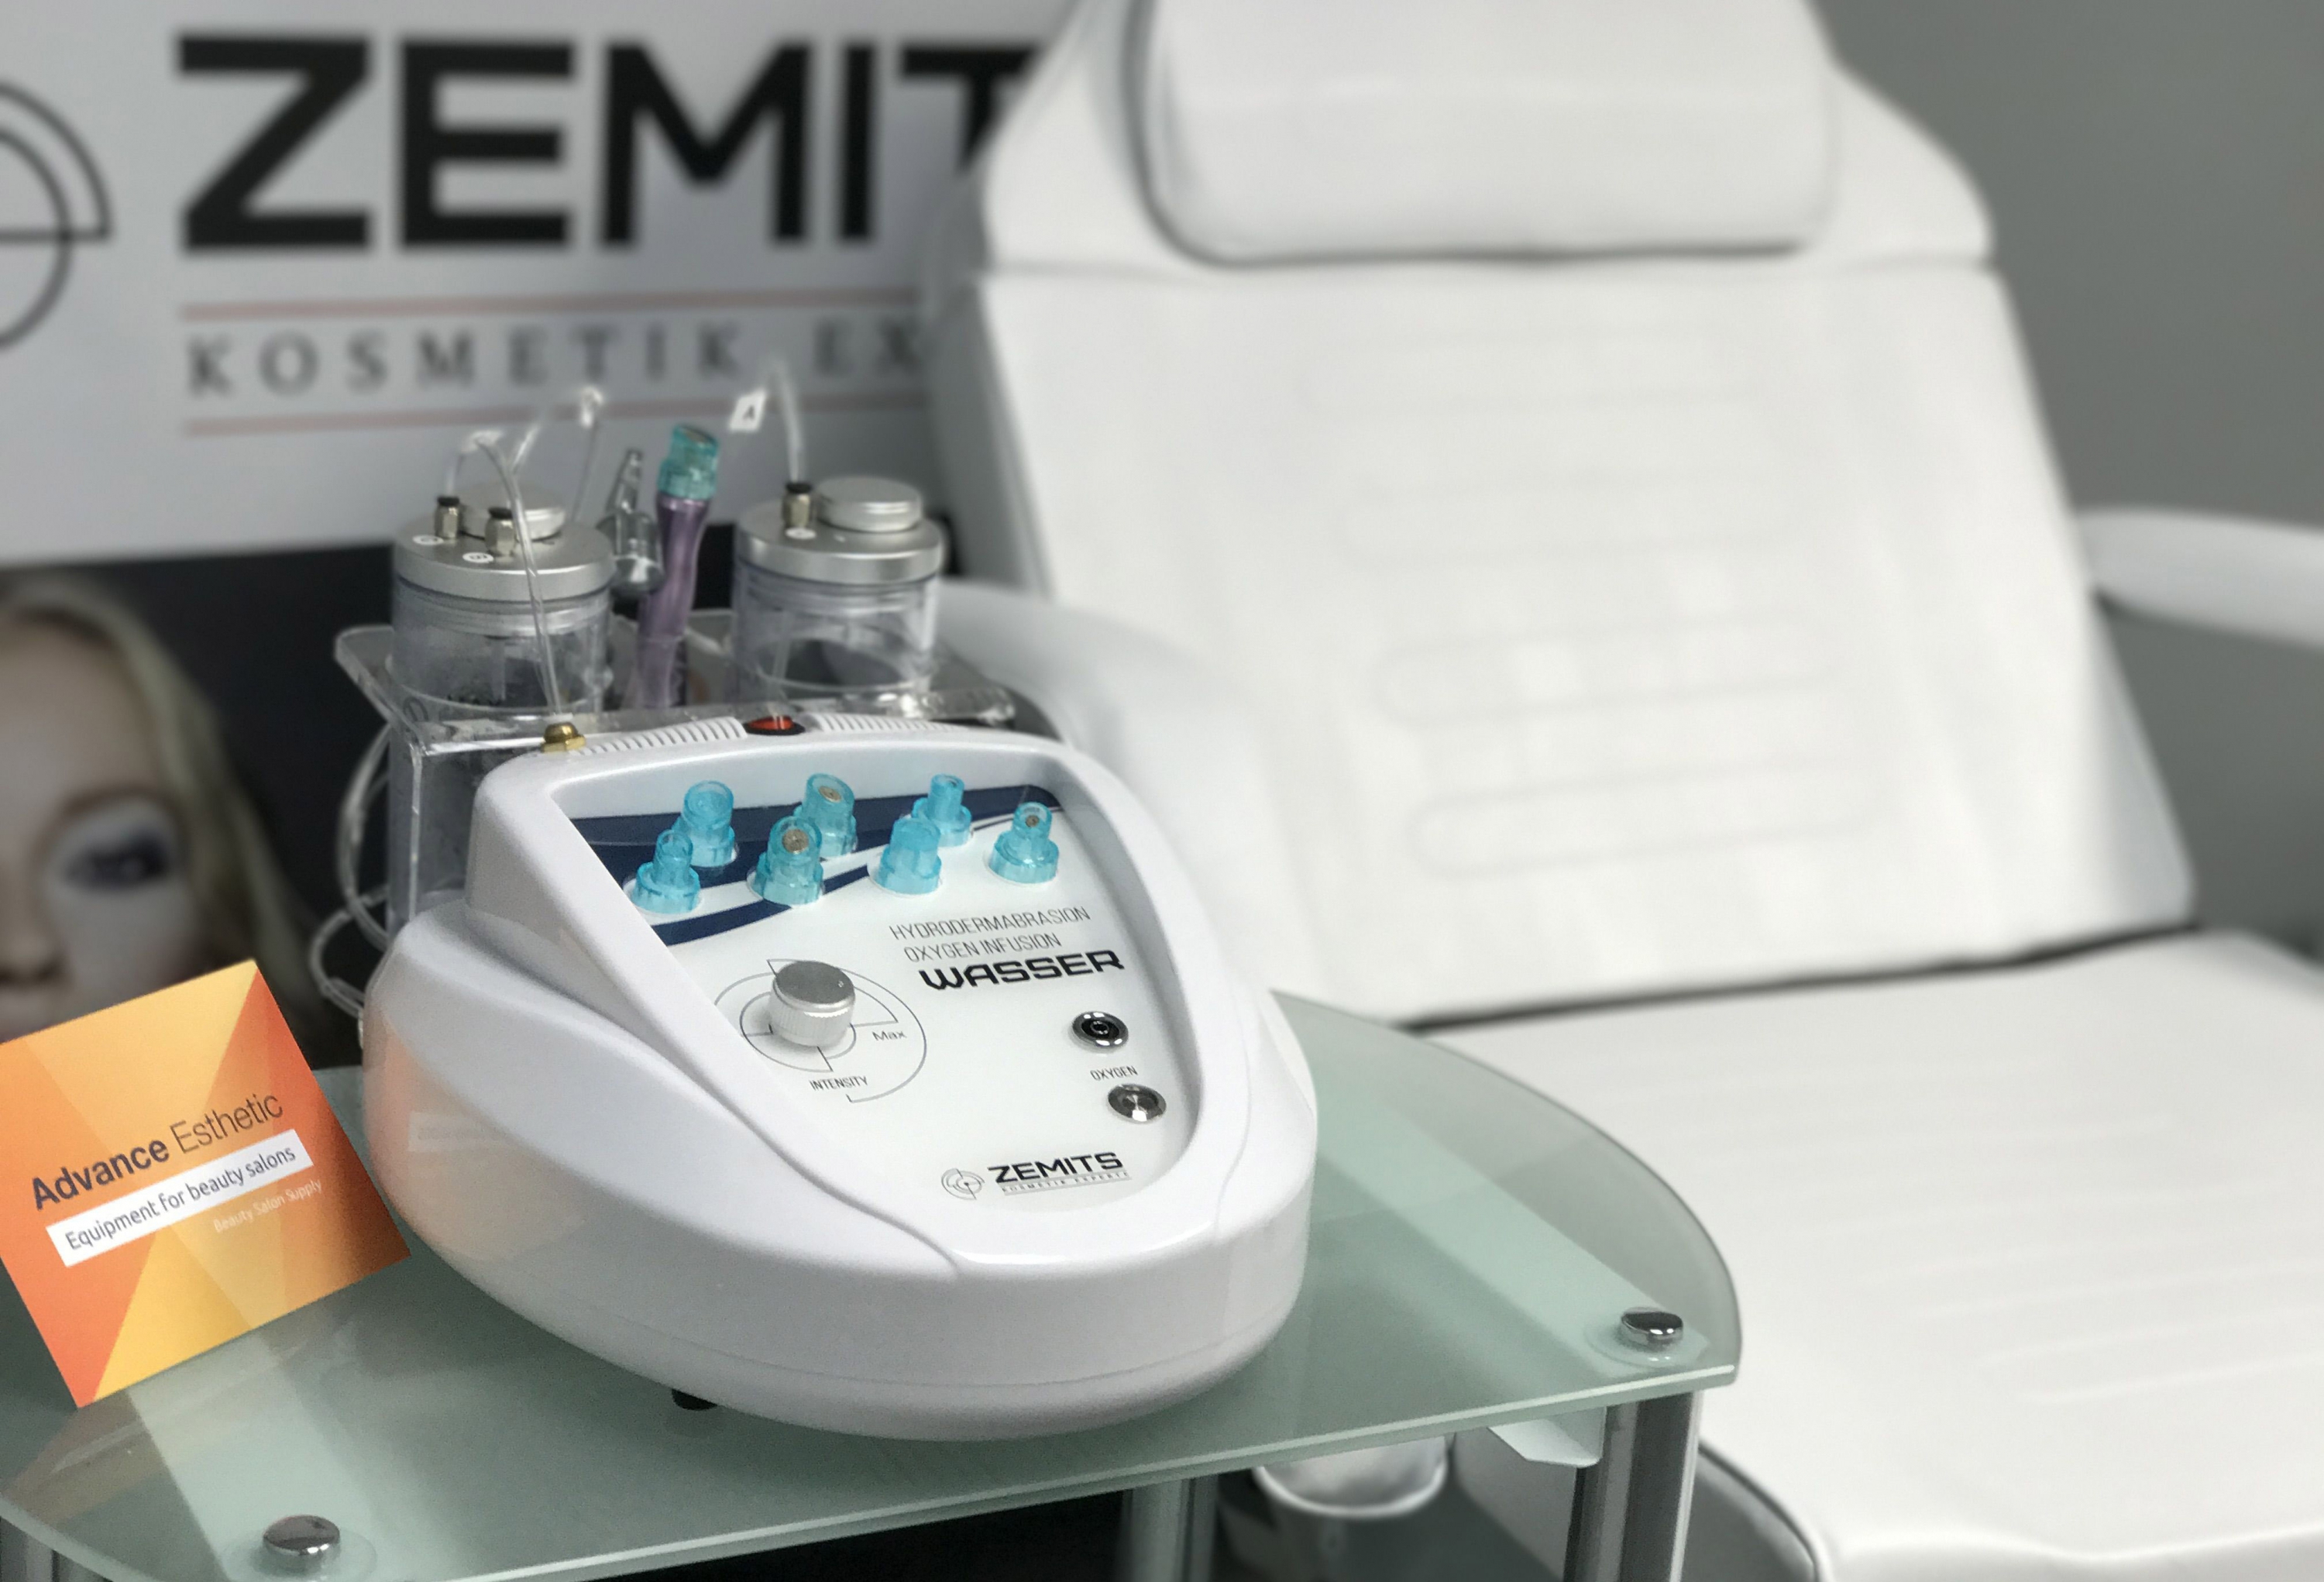 Оборудование Zemits - передовые методы терапии в мире косметологии